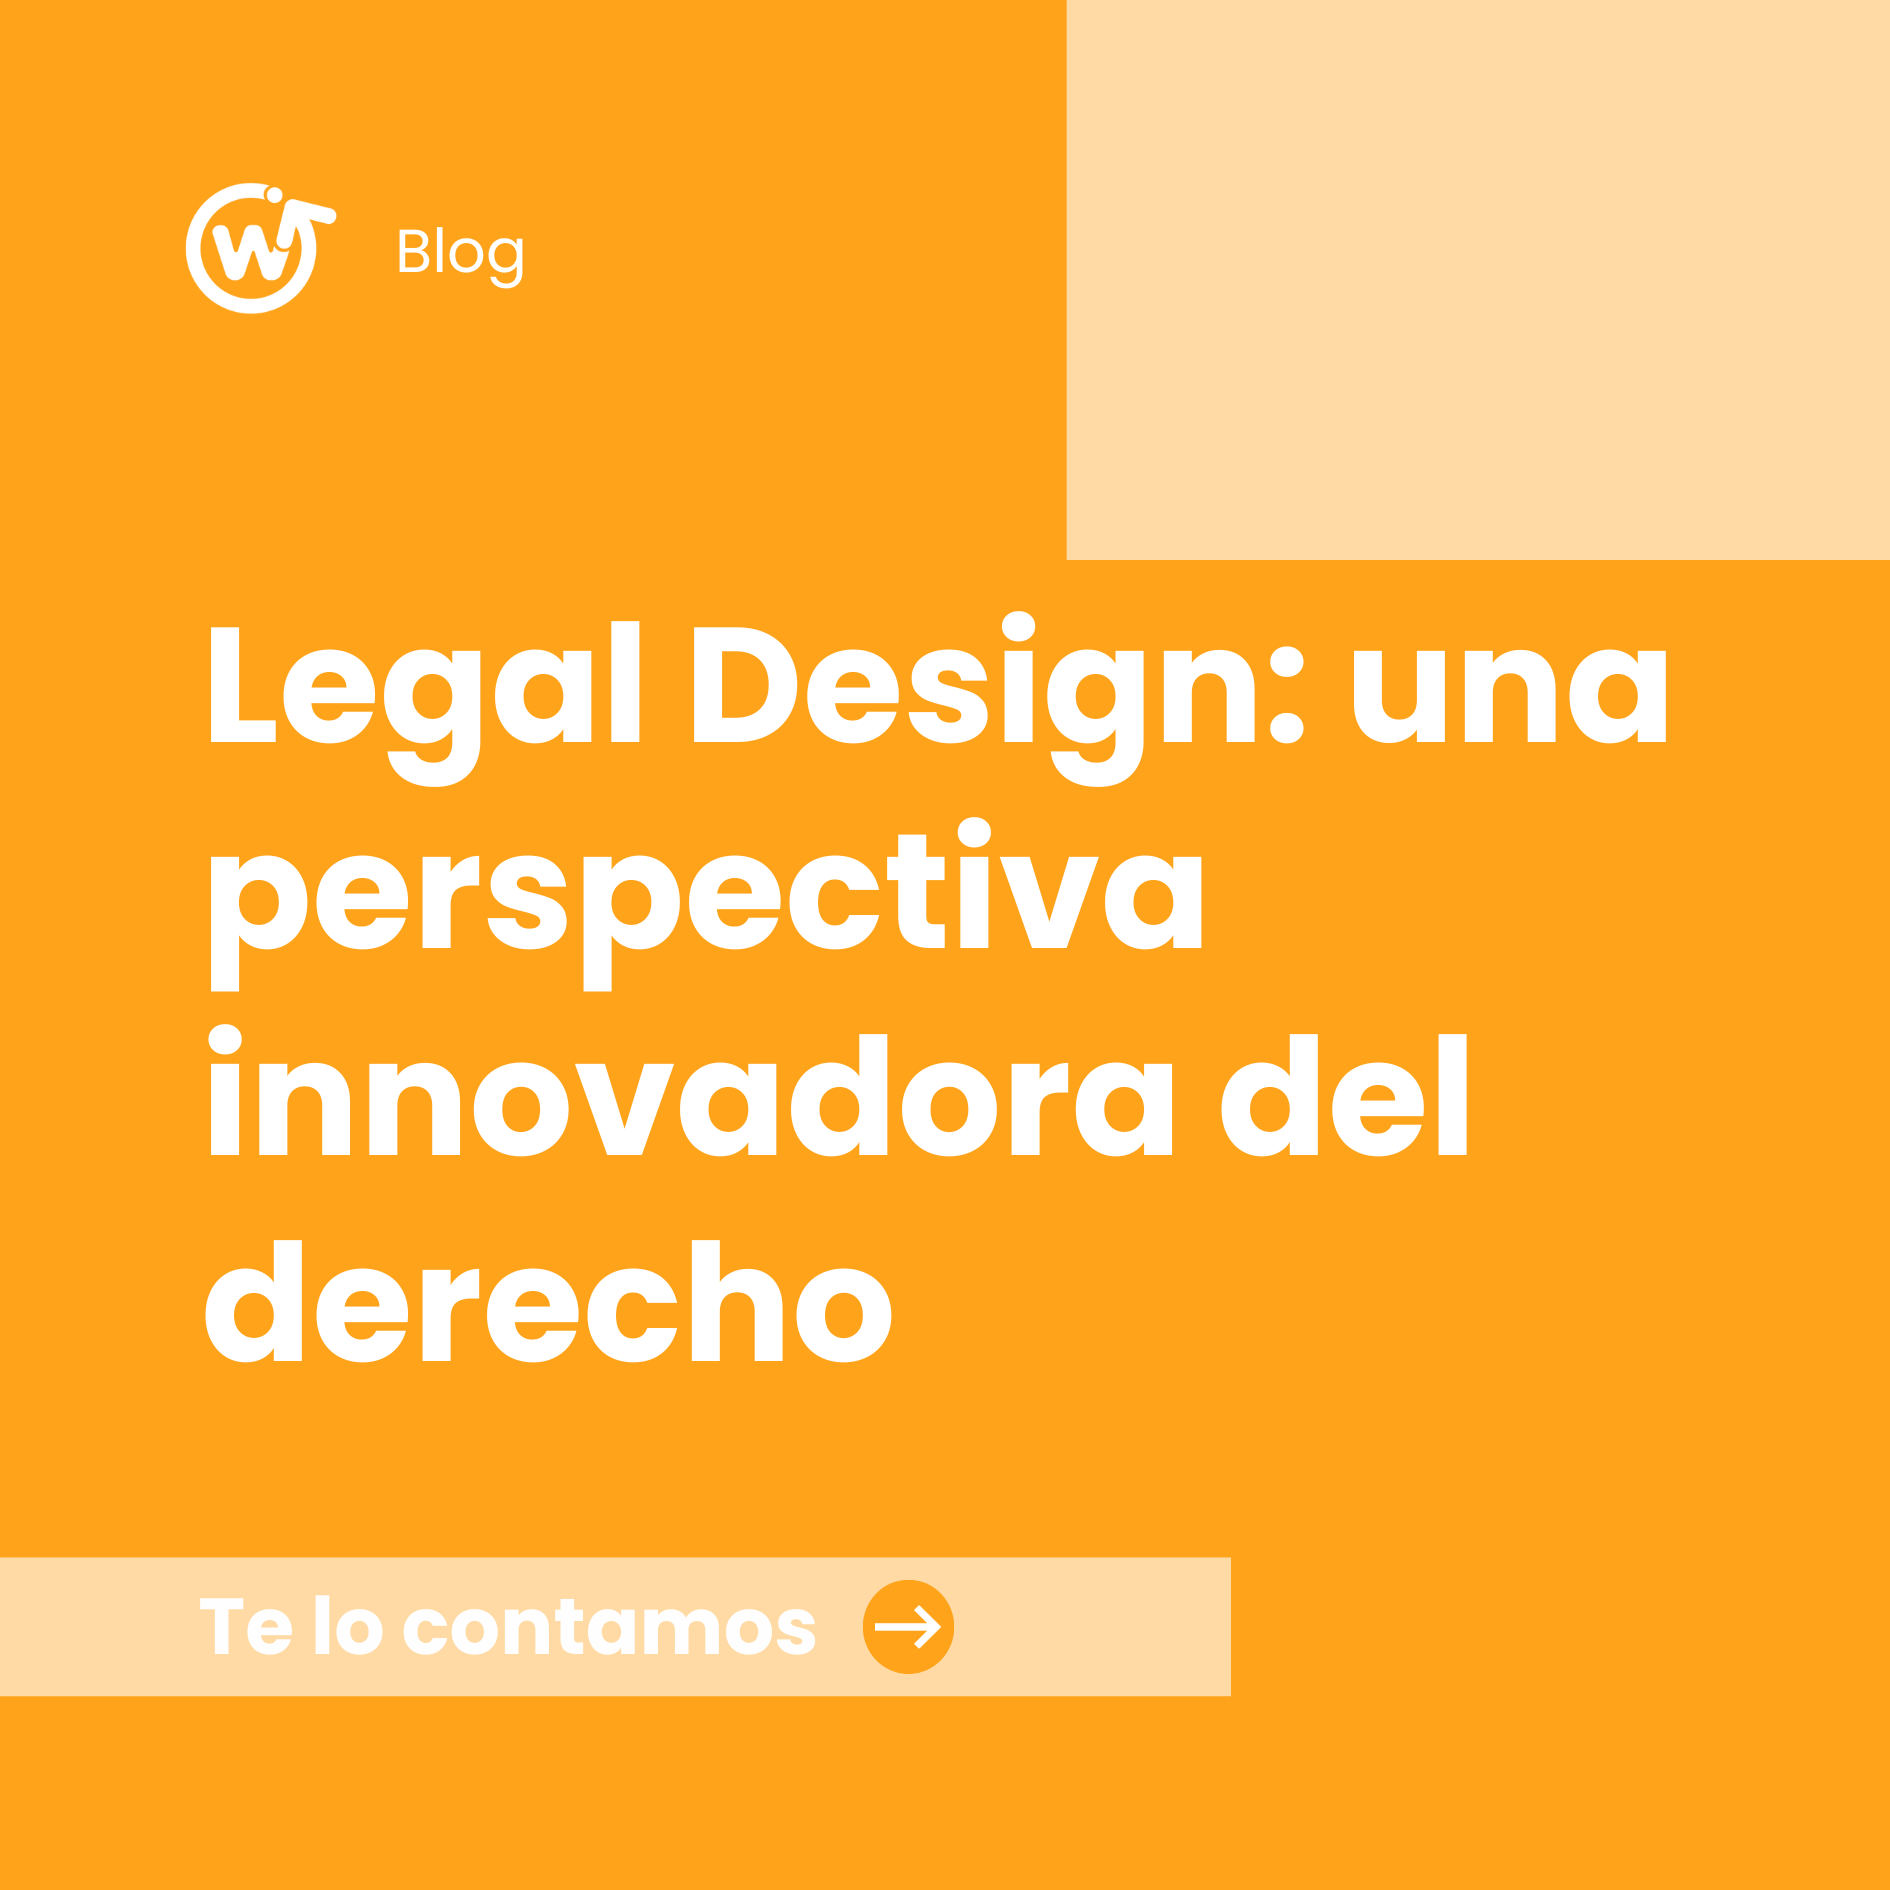 Legal Design: una perspectiva innovadora del derecho